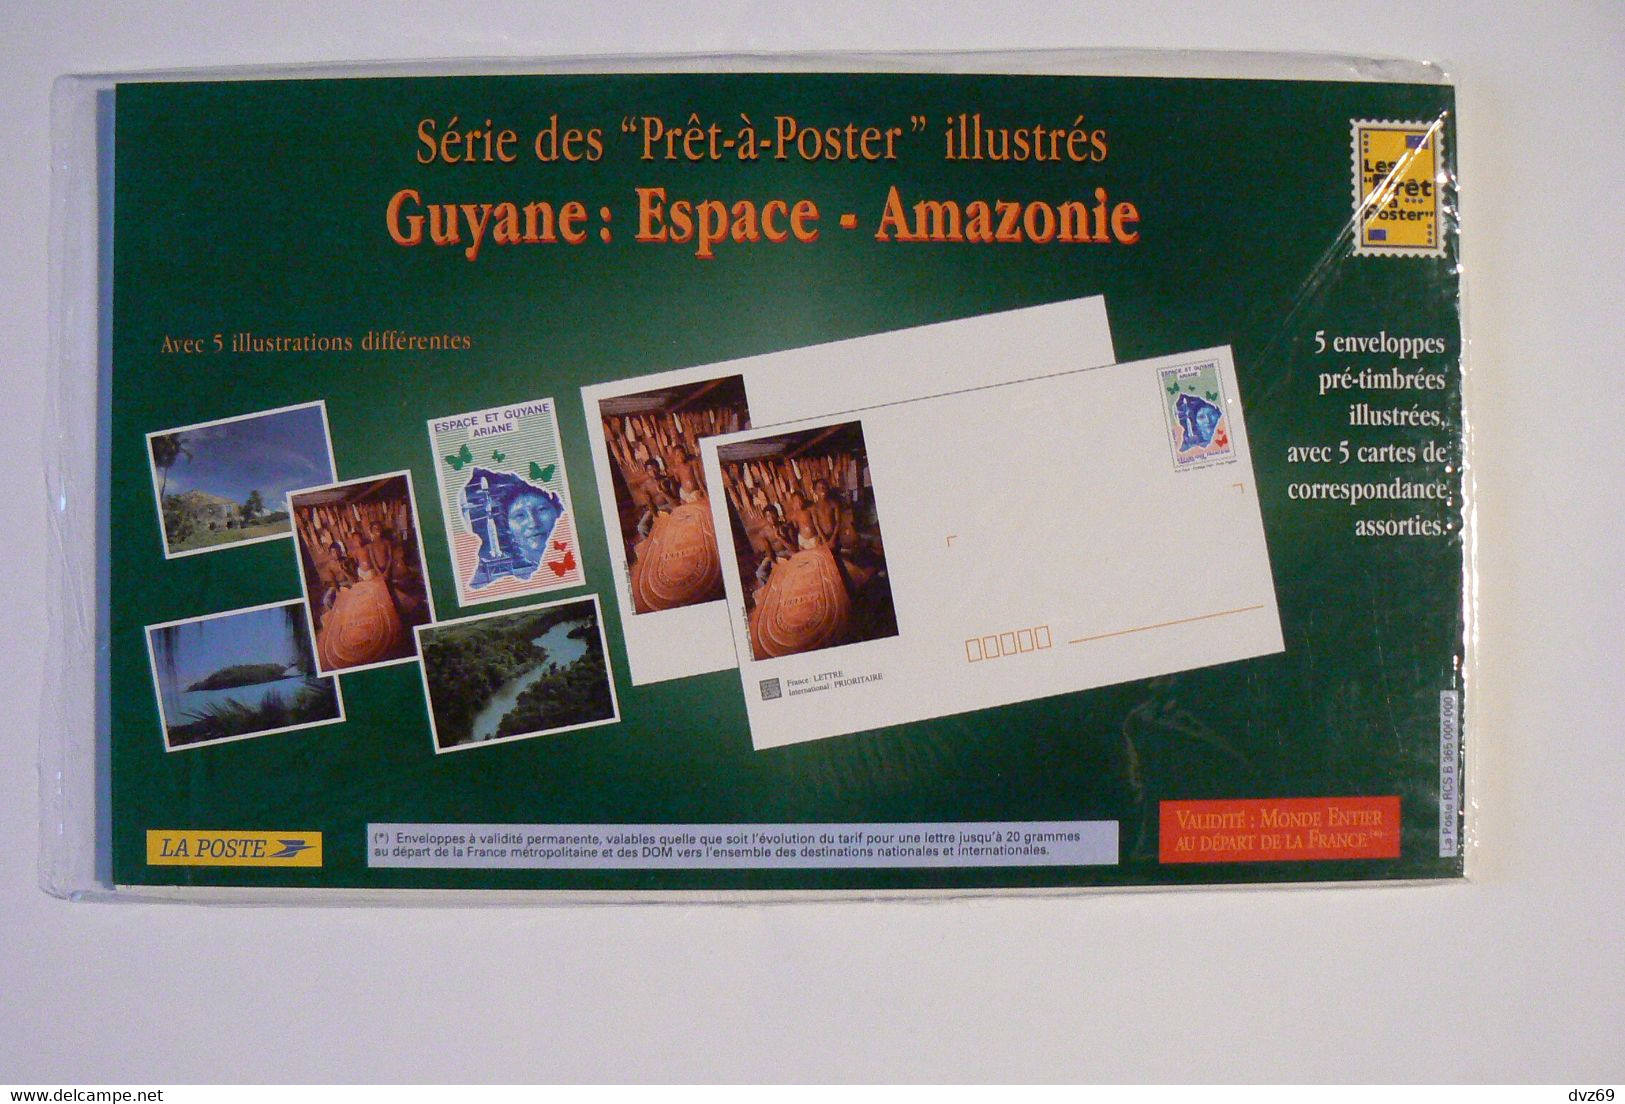 Guyane Espace Amazonie, 5 Enveloppes Pré-timbrées Illustrées + Cartes Assorties, Encore Sous Blister Ouvert, TB. - Colecciones & Series: PAP